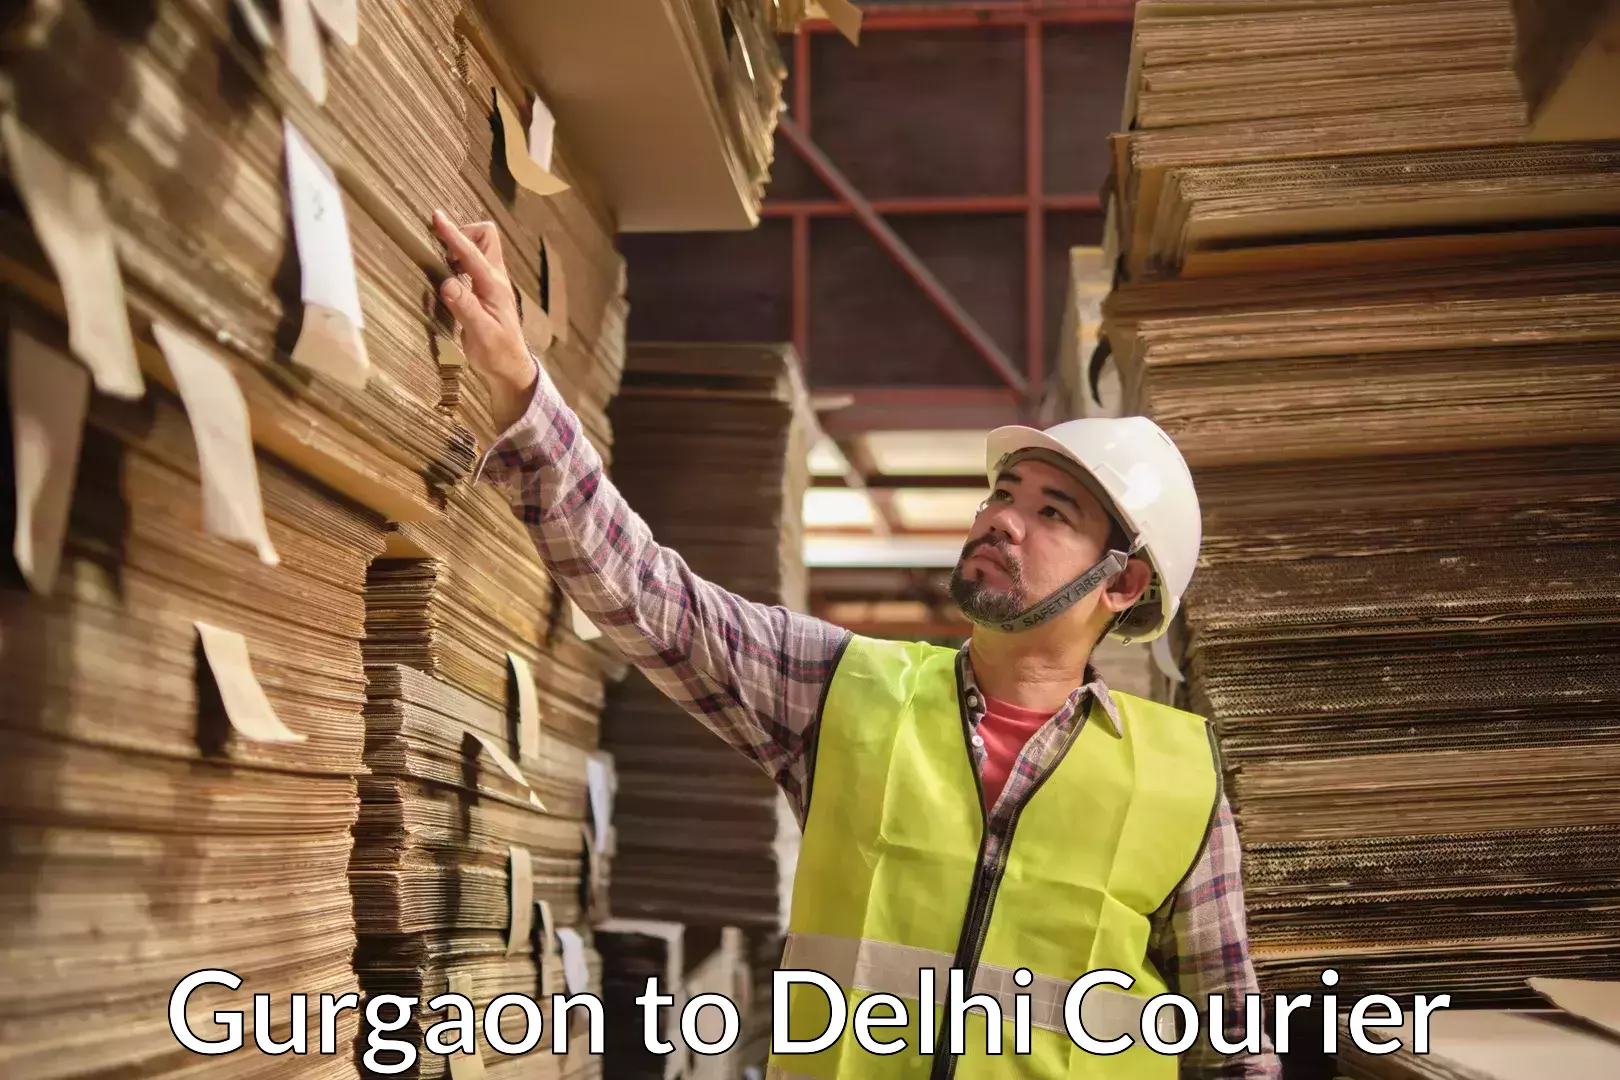 Furniture delivery service Gurgaon to Delhi